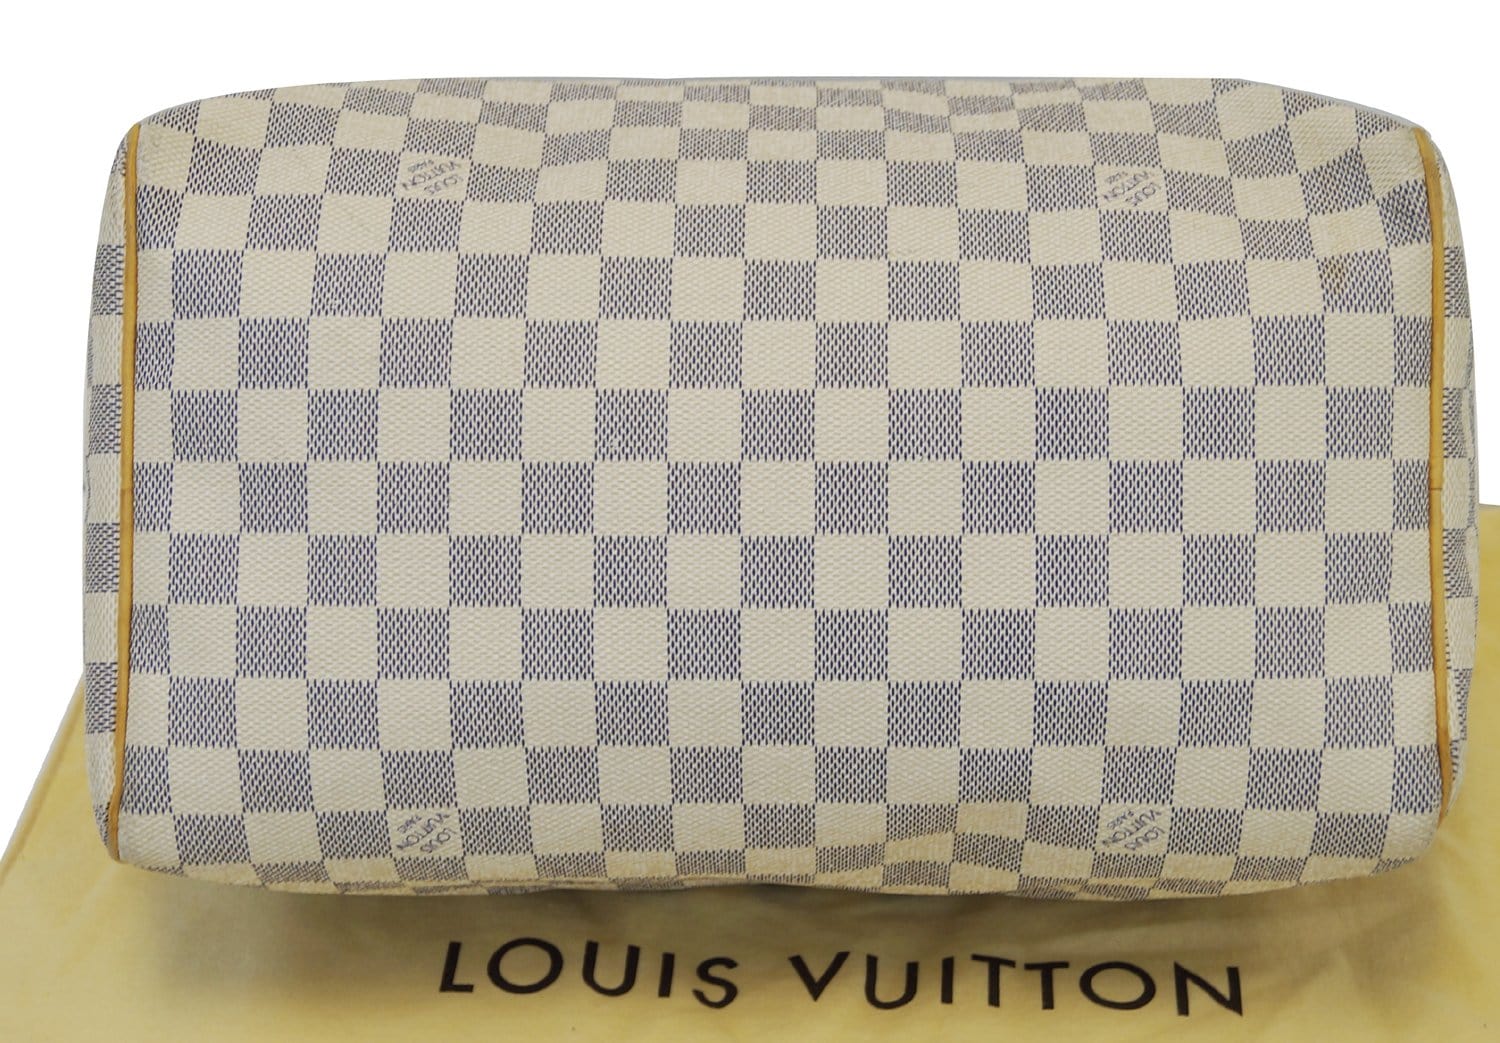 LOUIS VUITTON Damier Azur Speedy Bandouliere 30 Hand Bag N41001 -  MyDesignerly